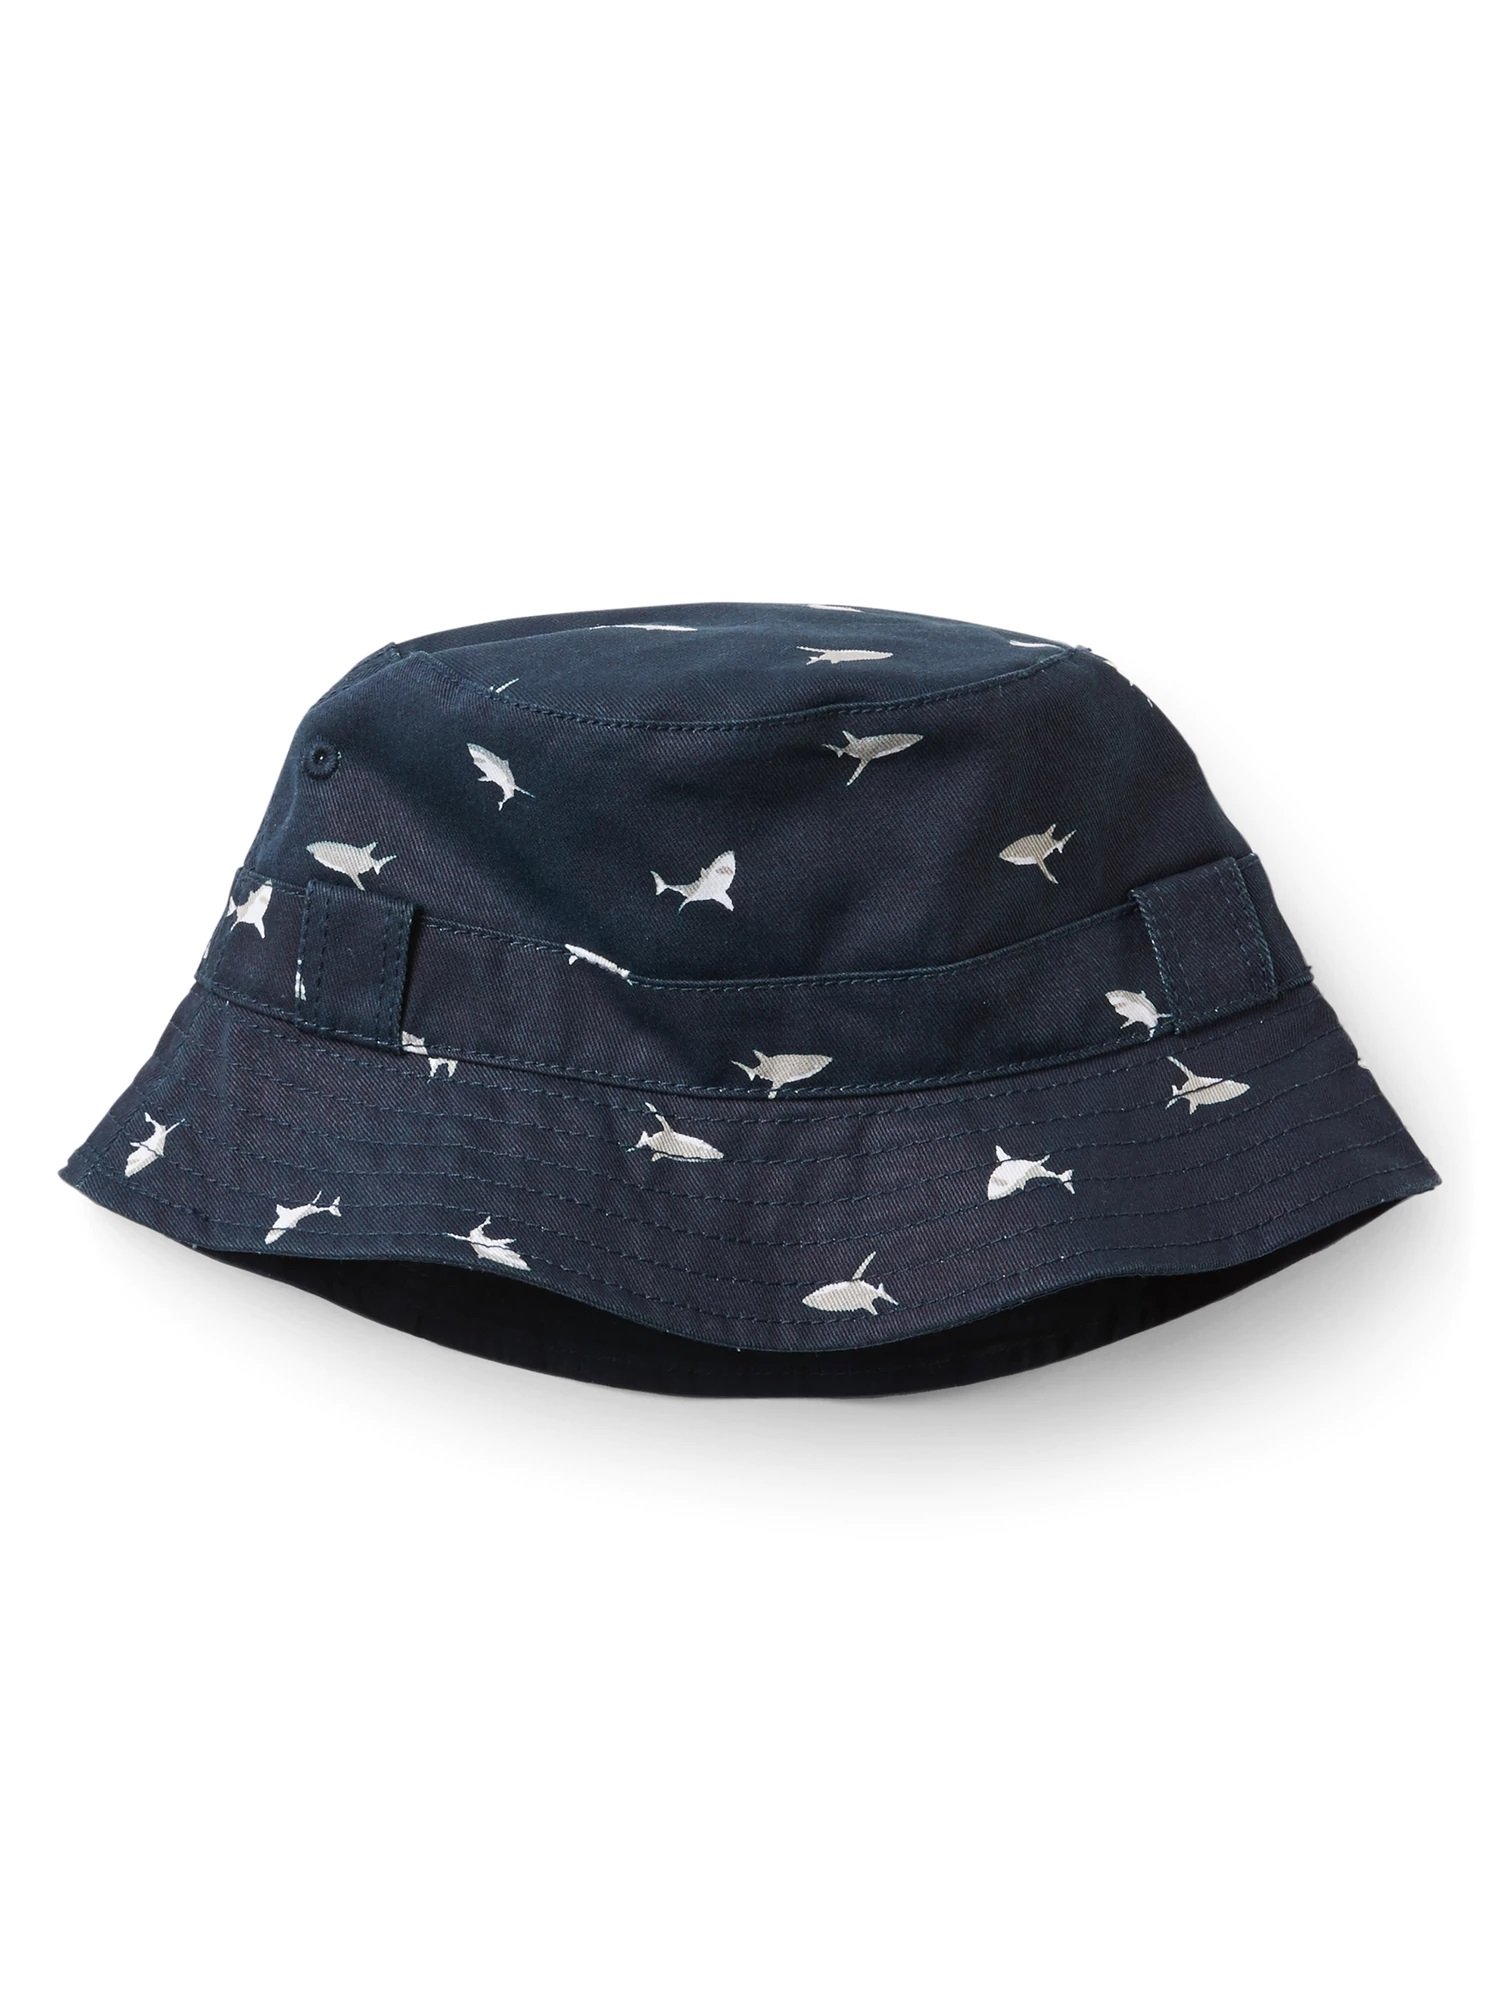 Köpek balığı desenli şapka product image